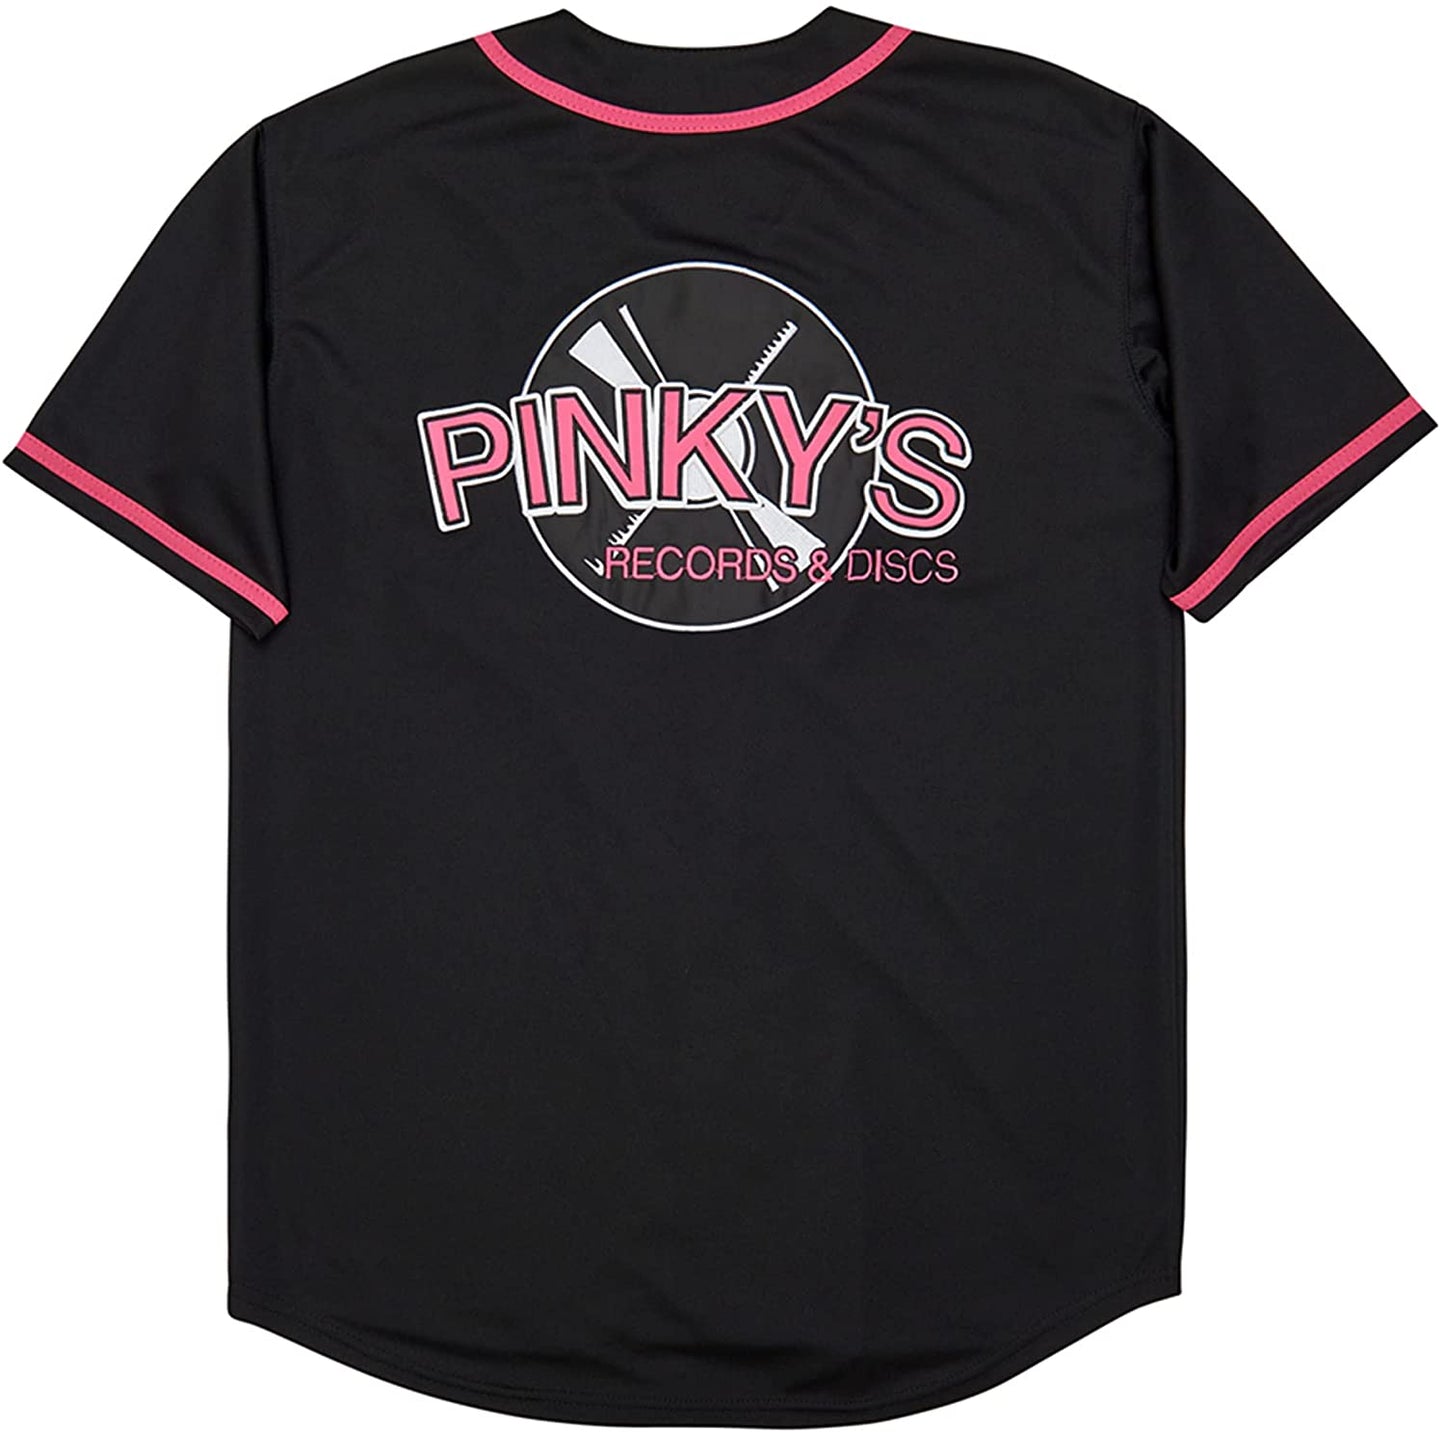 Next Friday Pinky's Record Movie 90s Baseball Jersey